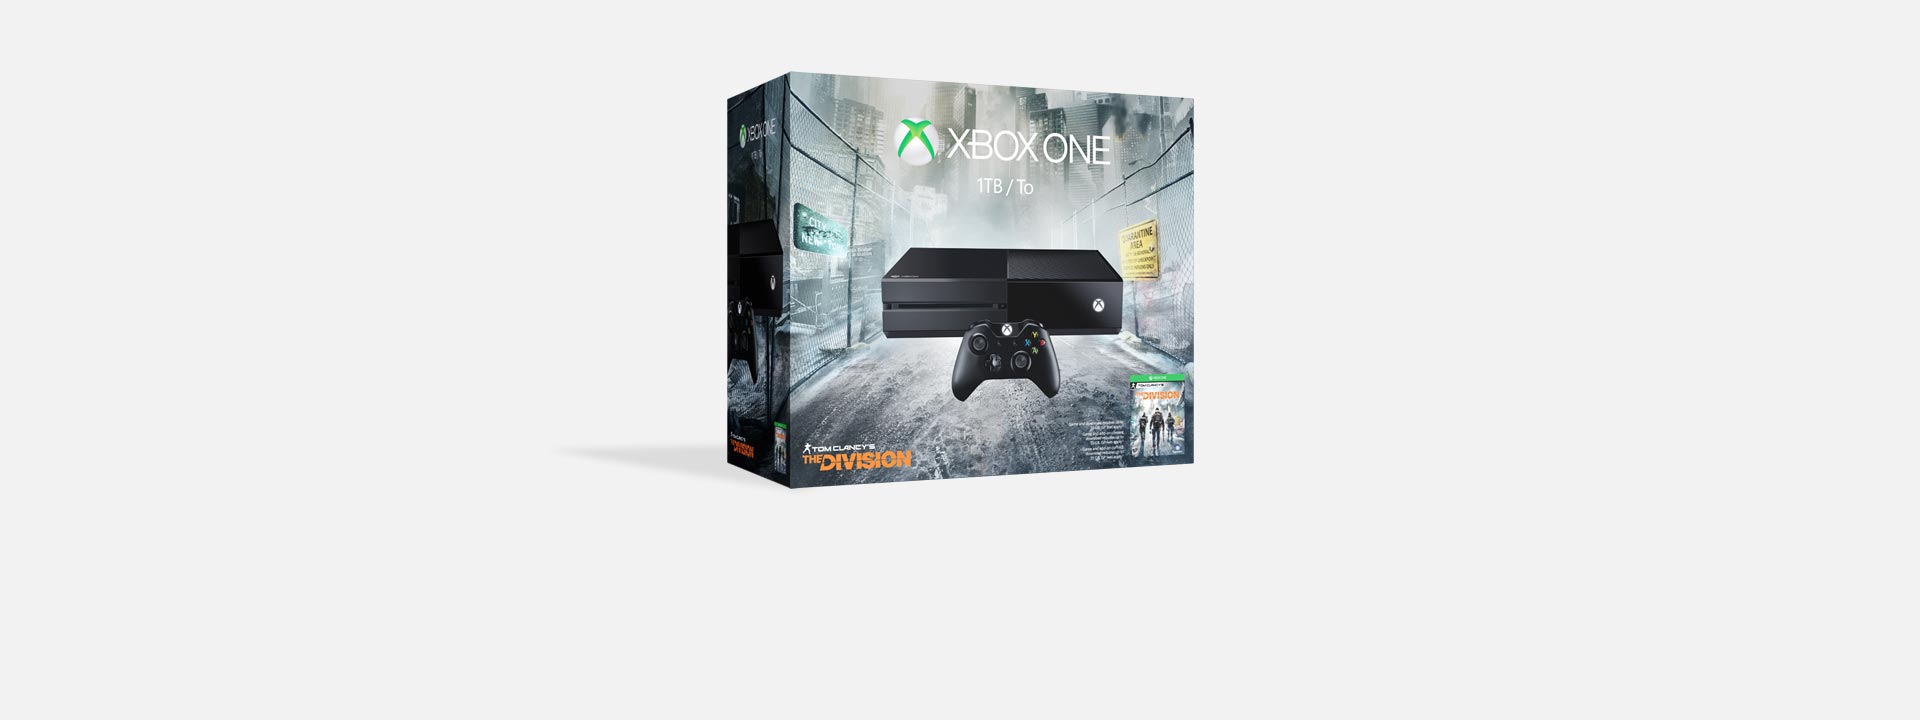 Sada Xboxu One s hrou Tom Clancy's the Division, koupit